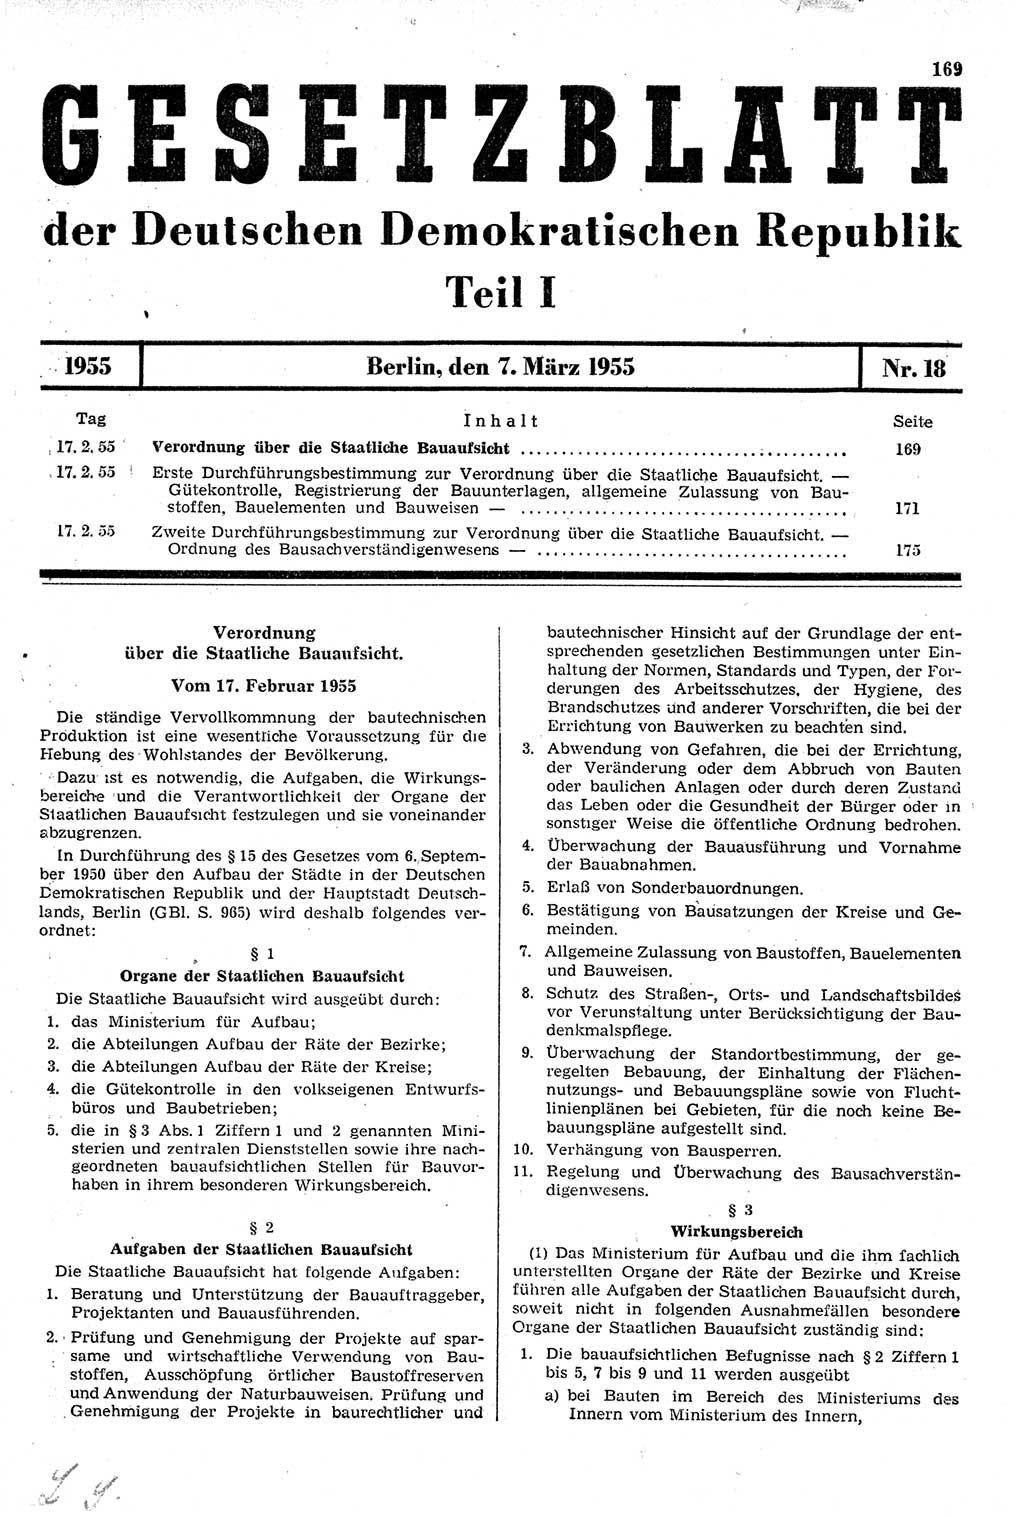 Gesetzblatt (GBl.) der Deutschen Demokratischen Republik (DDR) Teil Ⅰ 1955, Seite 169 (GBl. DDR Ⅰ 1955, S. 169)